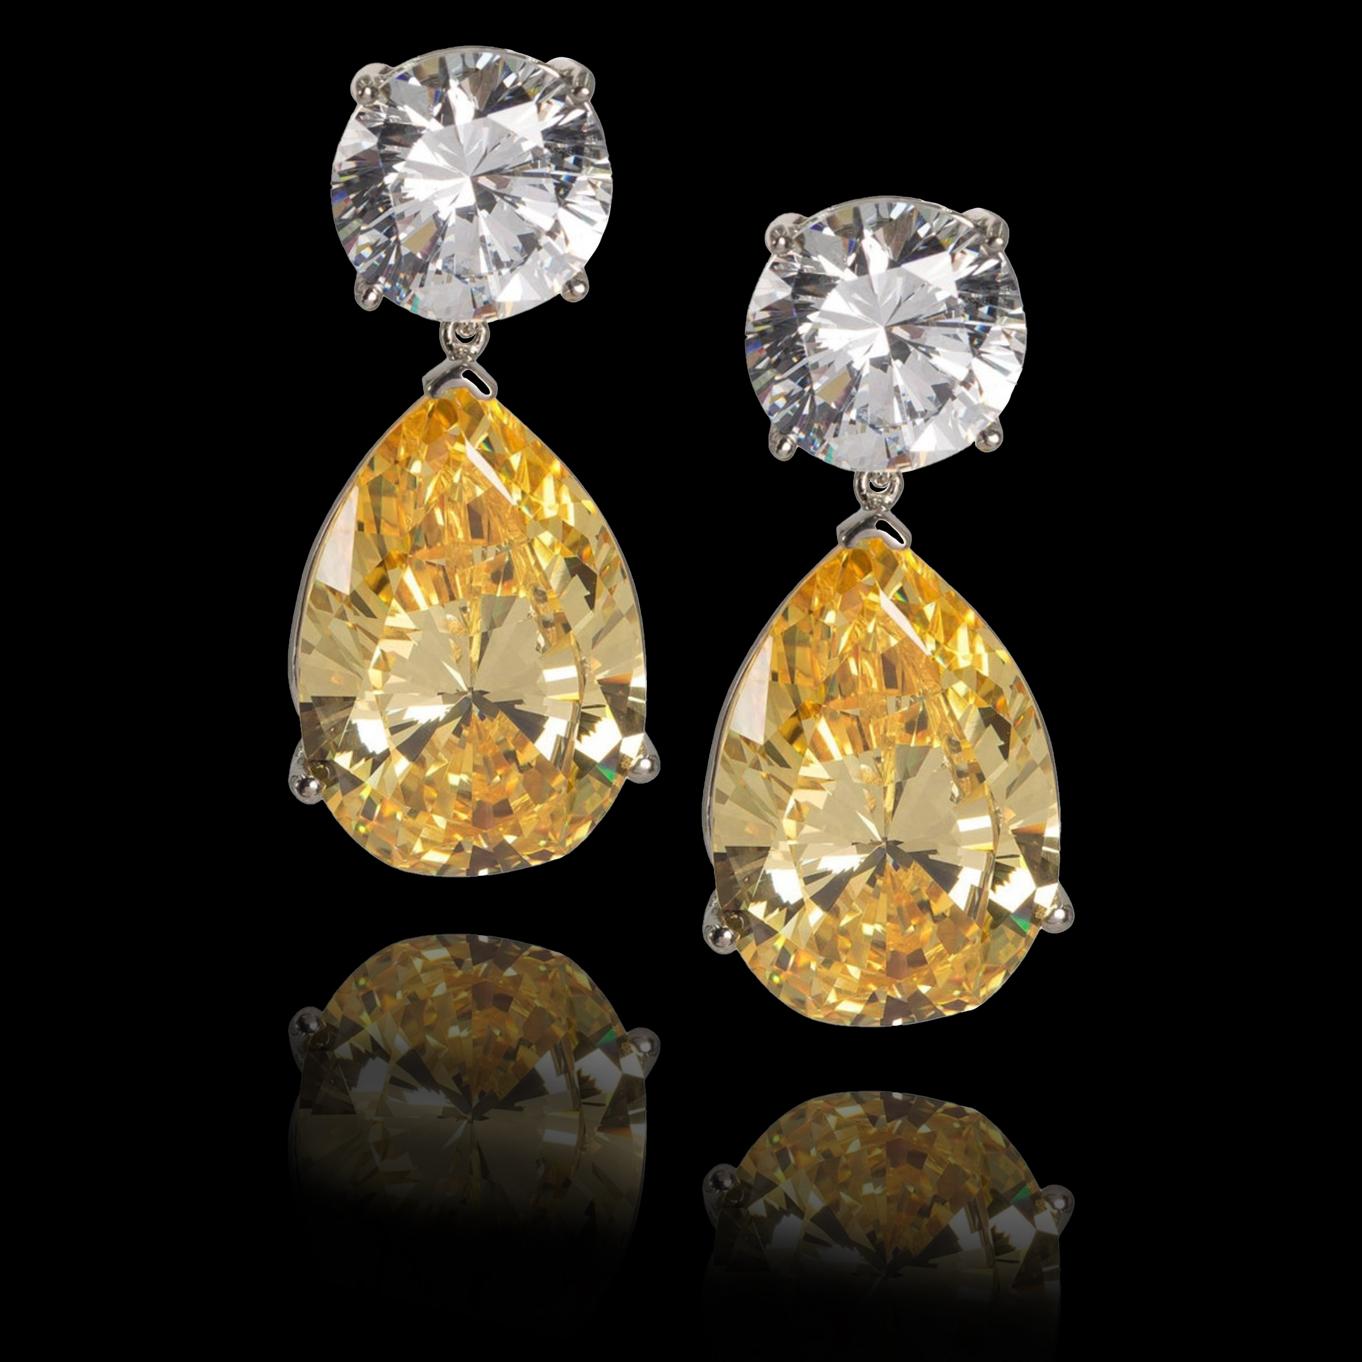 Erstellt Diamant Look Large  Weiße und gelbe Tropfen CZ-Ohrringe
Wenn Sie sich für intensives Fancy-Gelb entscheiden, werden Sie von diesen atemberaubenden Diamant-Ohrringen überrascht und beeindruckt sein.
Jeder runde CZ hat das gleiche Aussehen